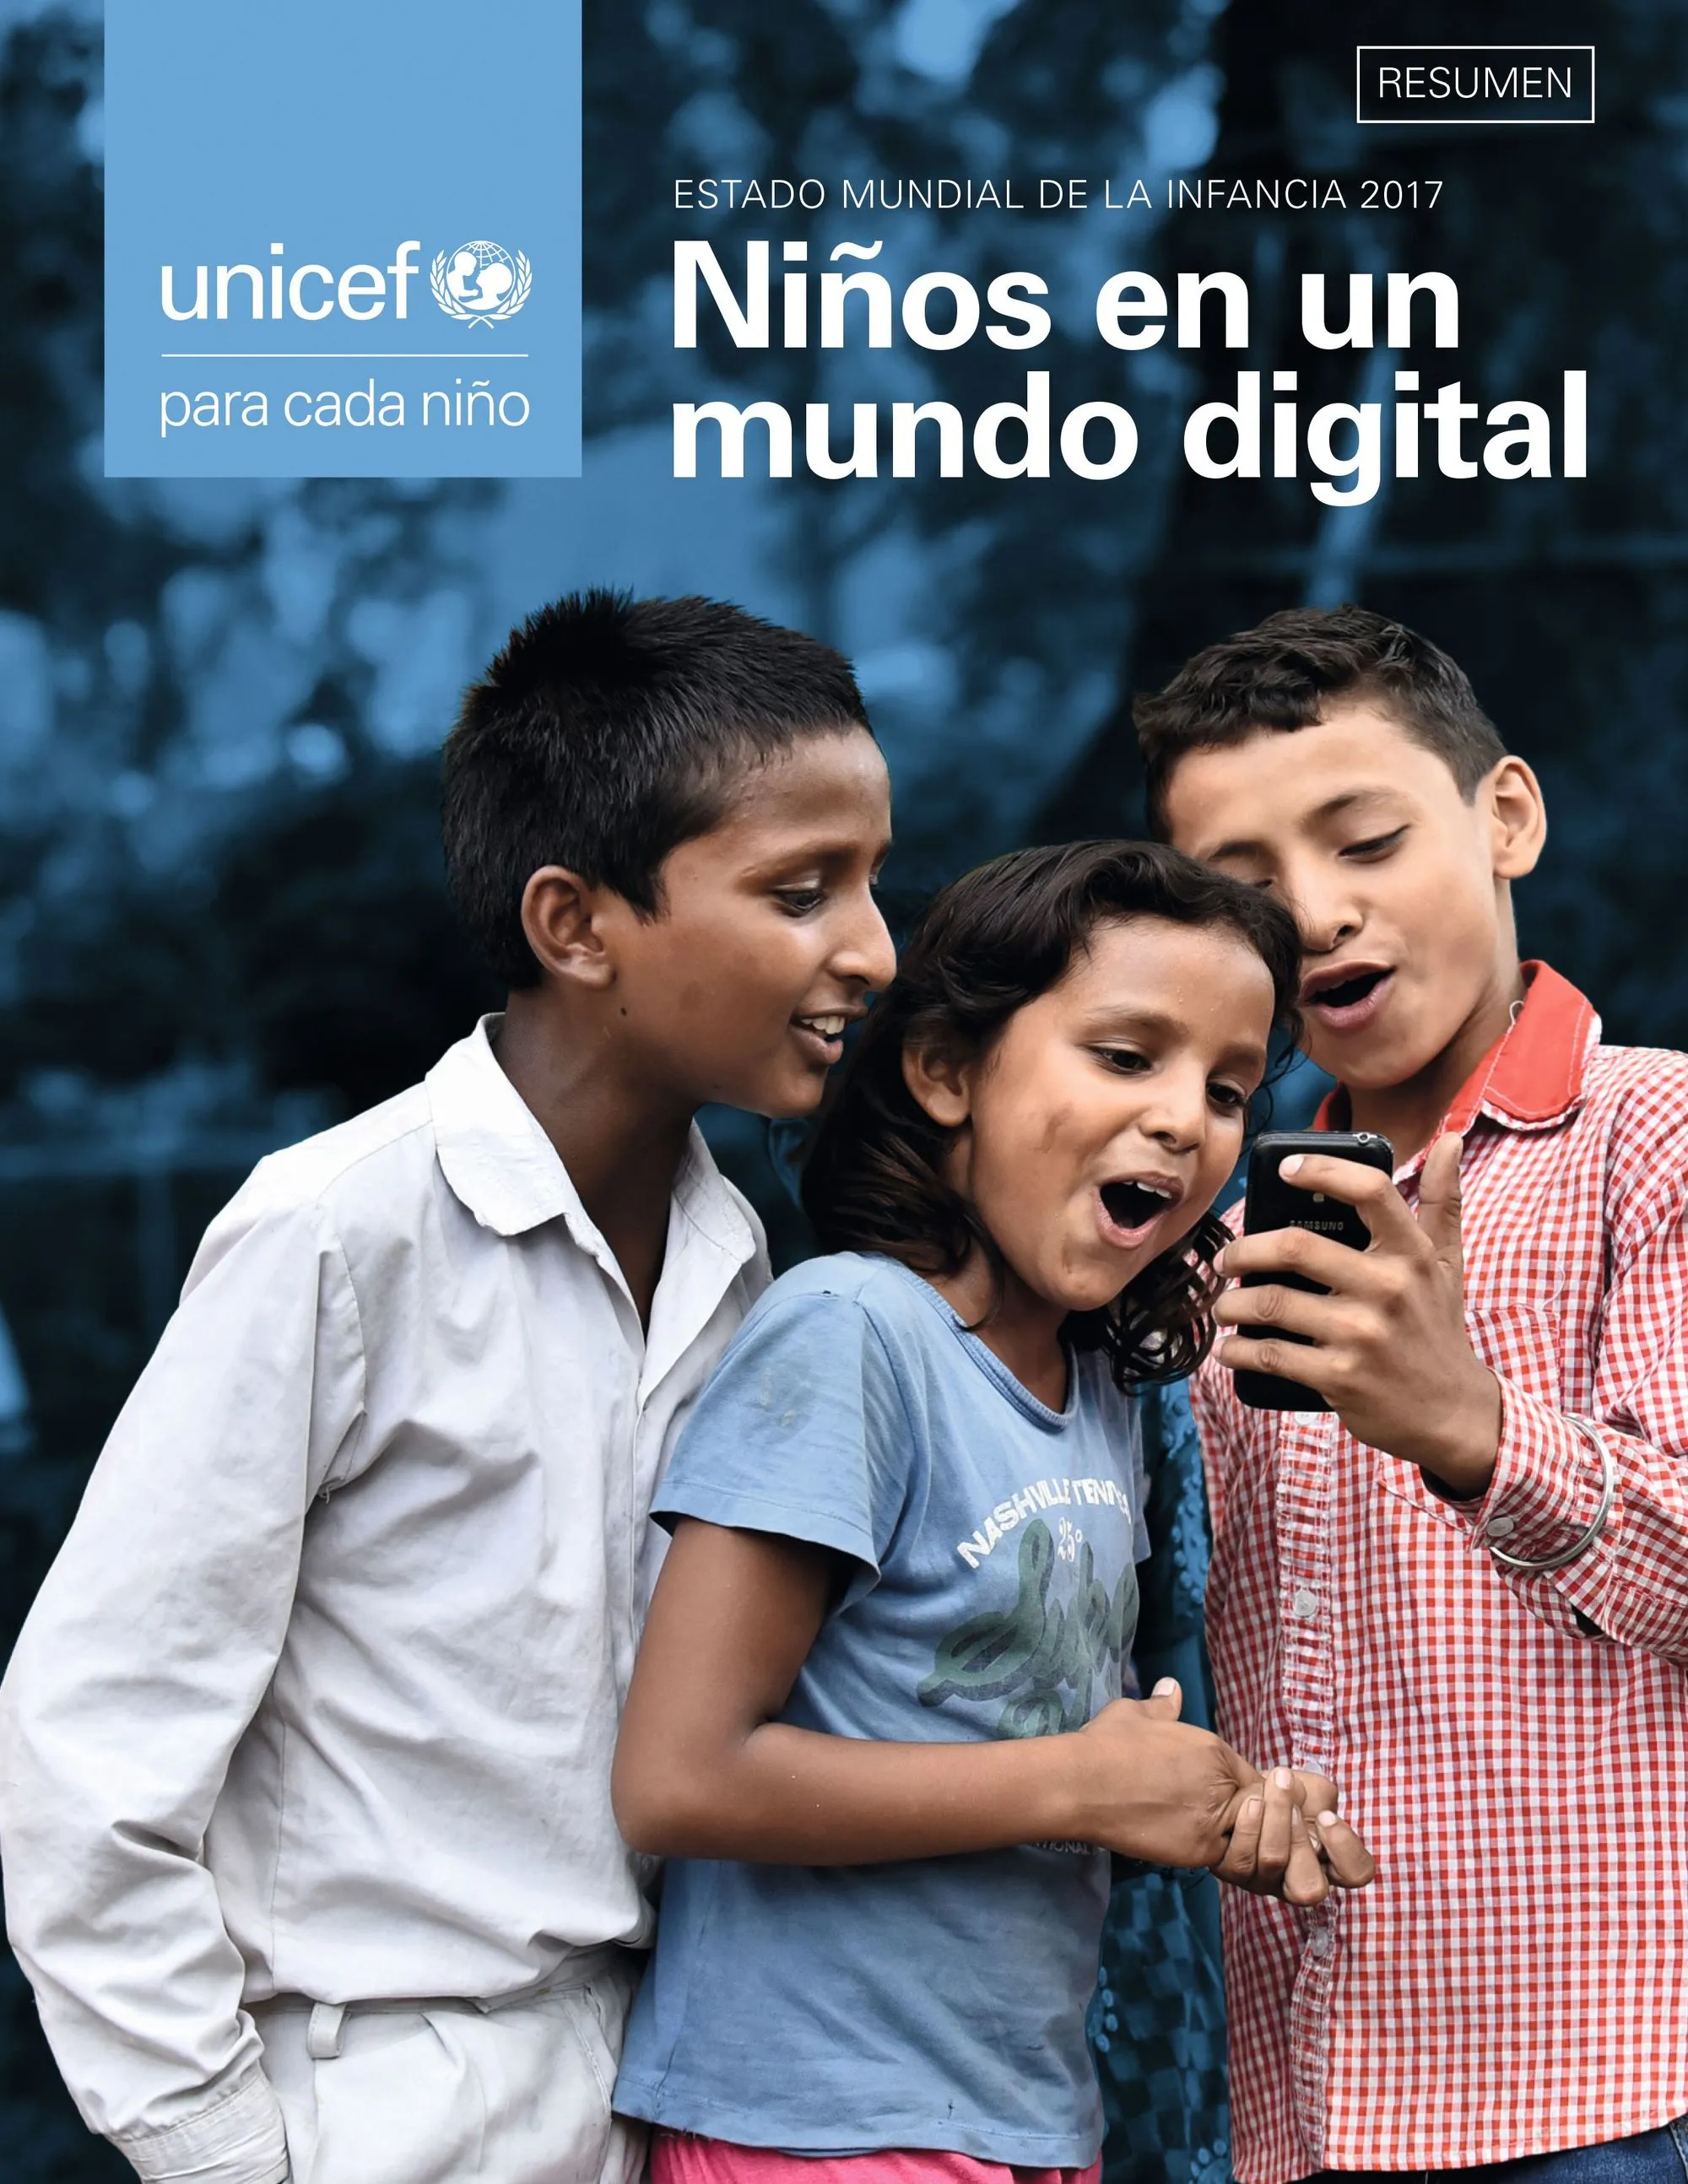 Campaña UNICEF Niños en un mundo digital realizada por Pablo Rebaque, 2017.